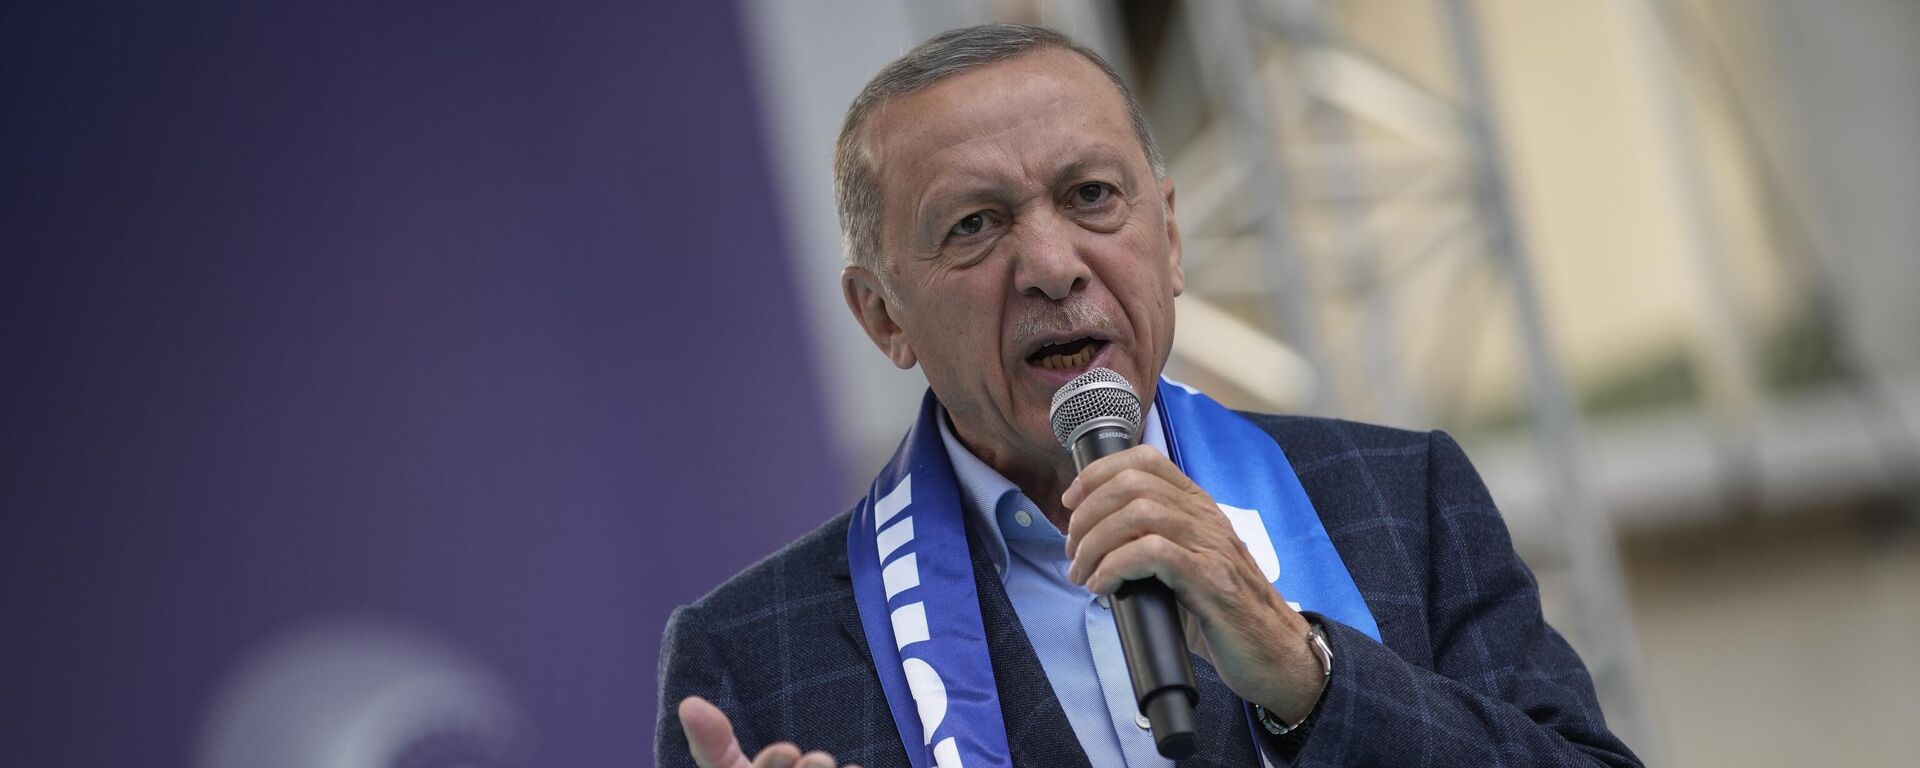 O presidente turco e candidato presidencial da Aliança do Povo, Recep Tayyip Erdogan, gesticula enquanto faz um discurso durante um comício de campanha eleitoral em Istambul, Turquia, 13 de maio de 2023 - Sputnik Brasil, 1920, 13.05.2023